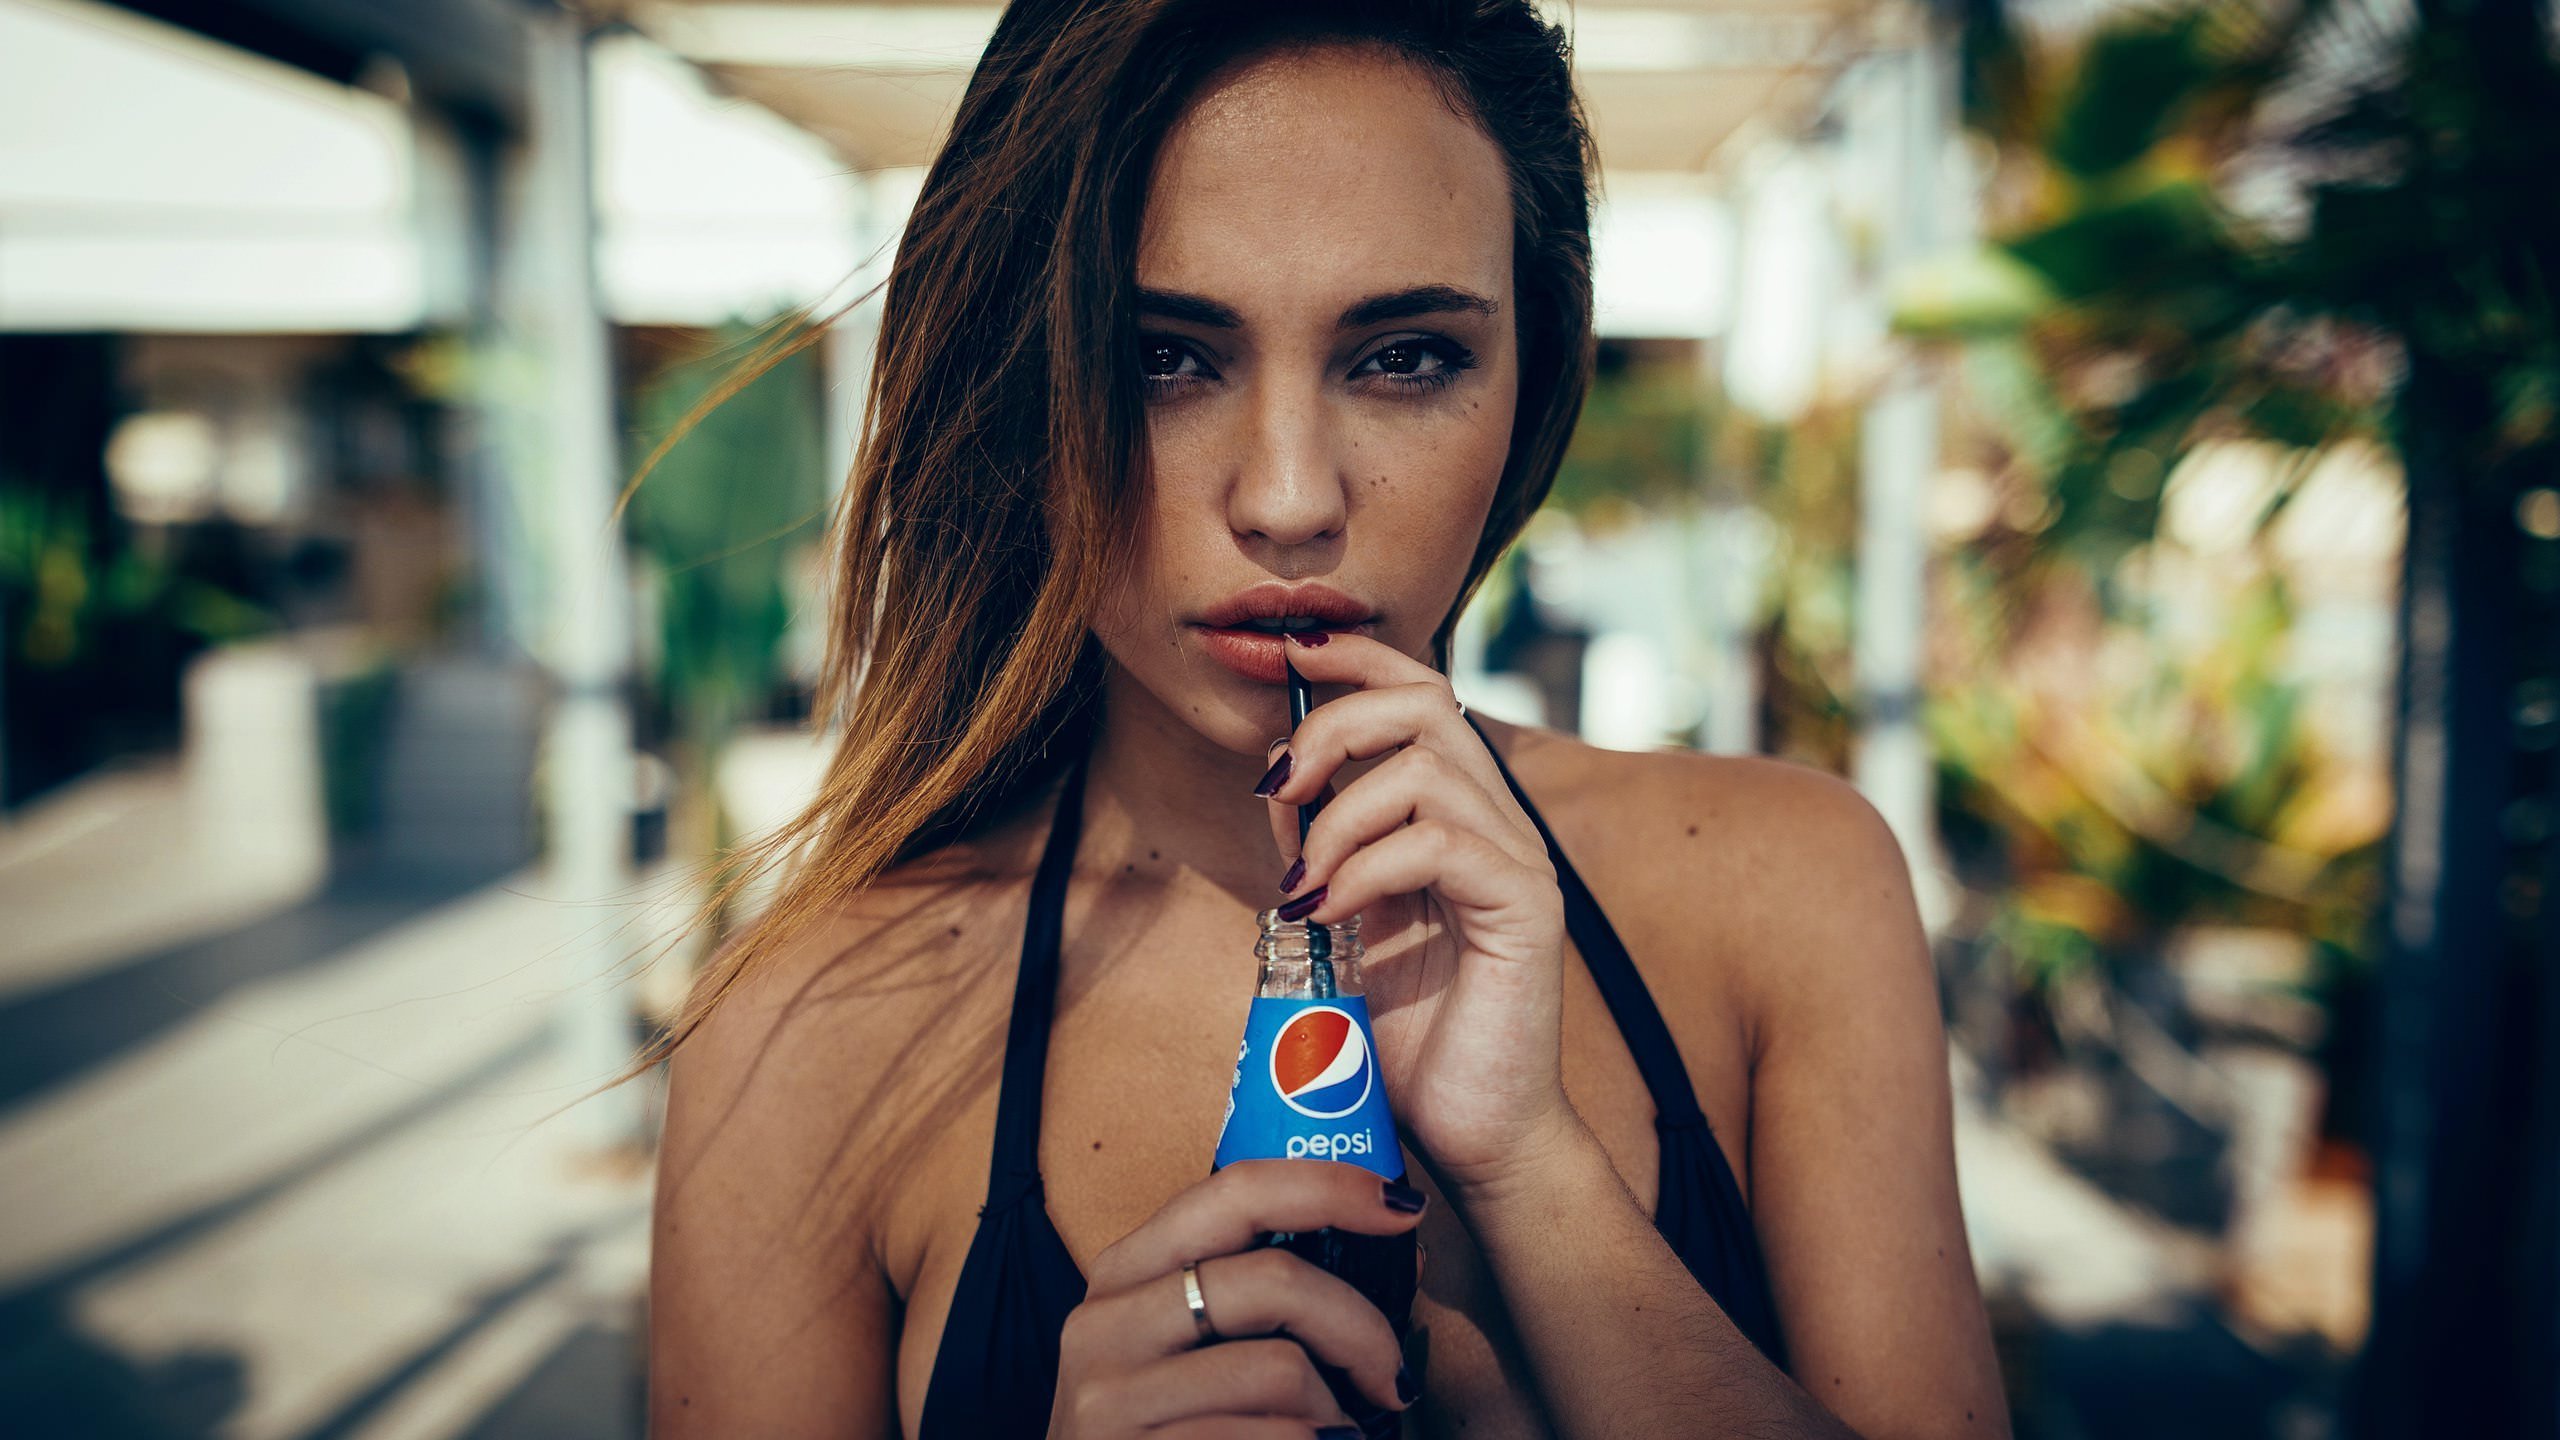 Pepsi Max Wallpaper